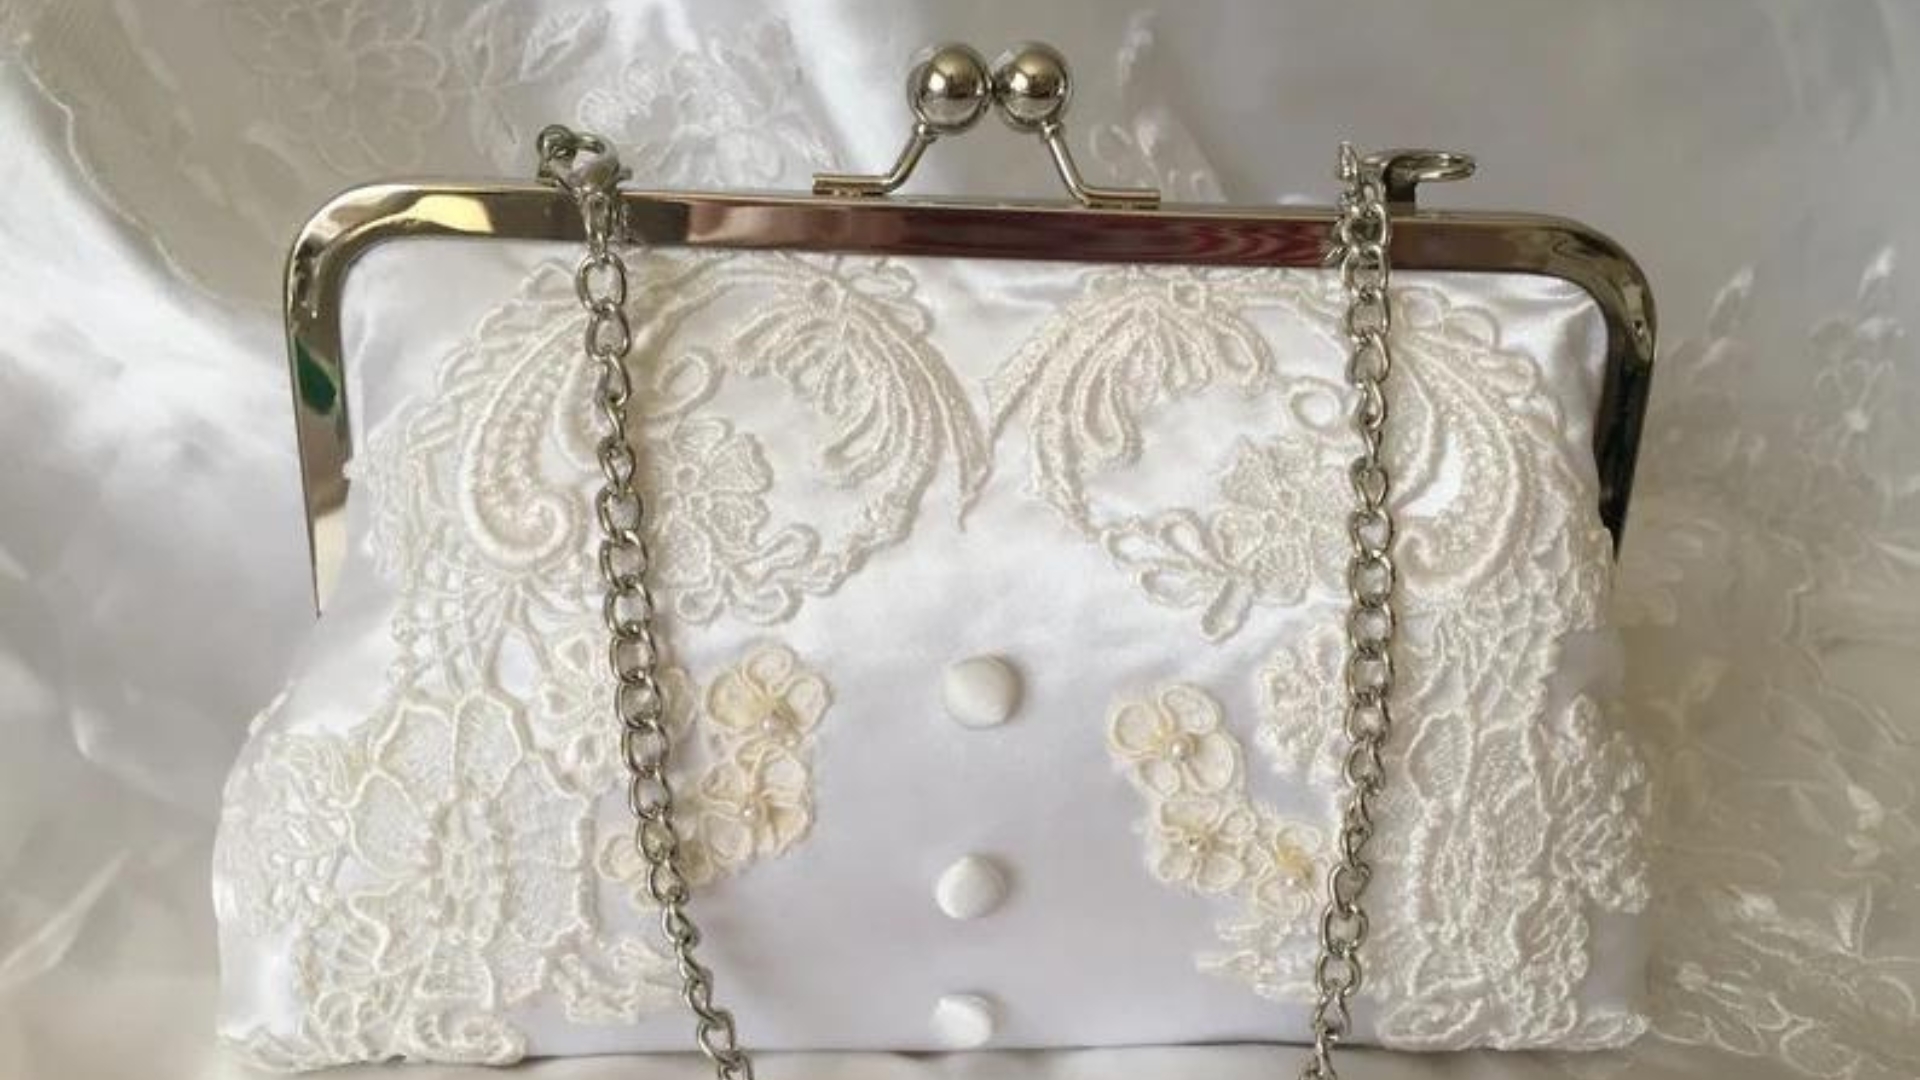 clutch made from wedding dress as a keepsake